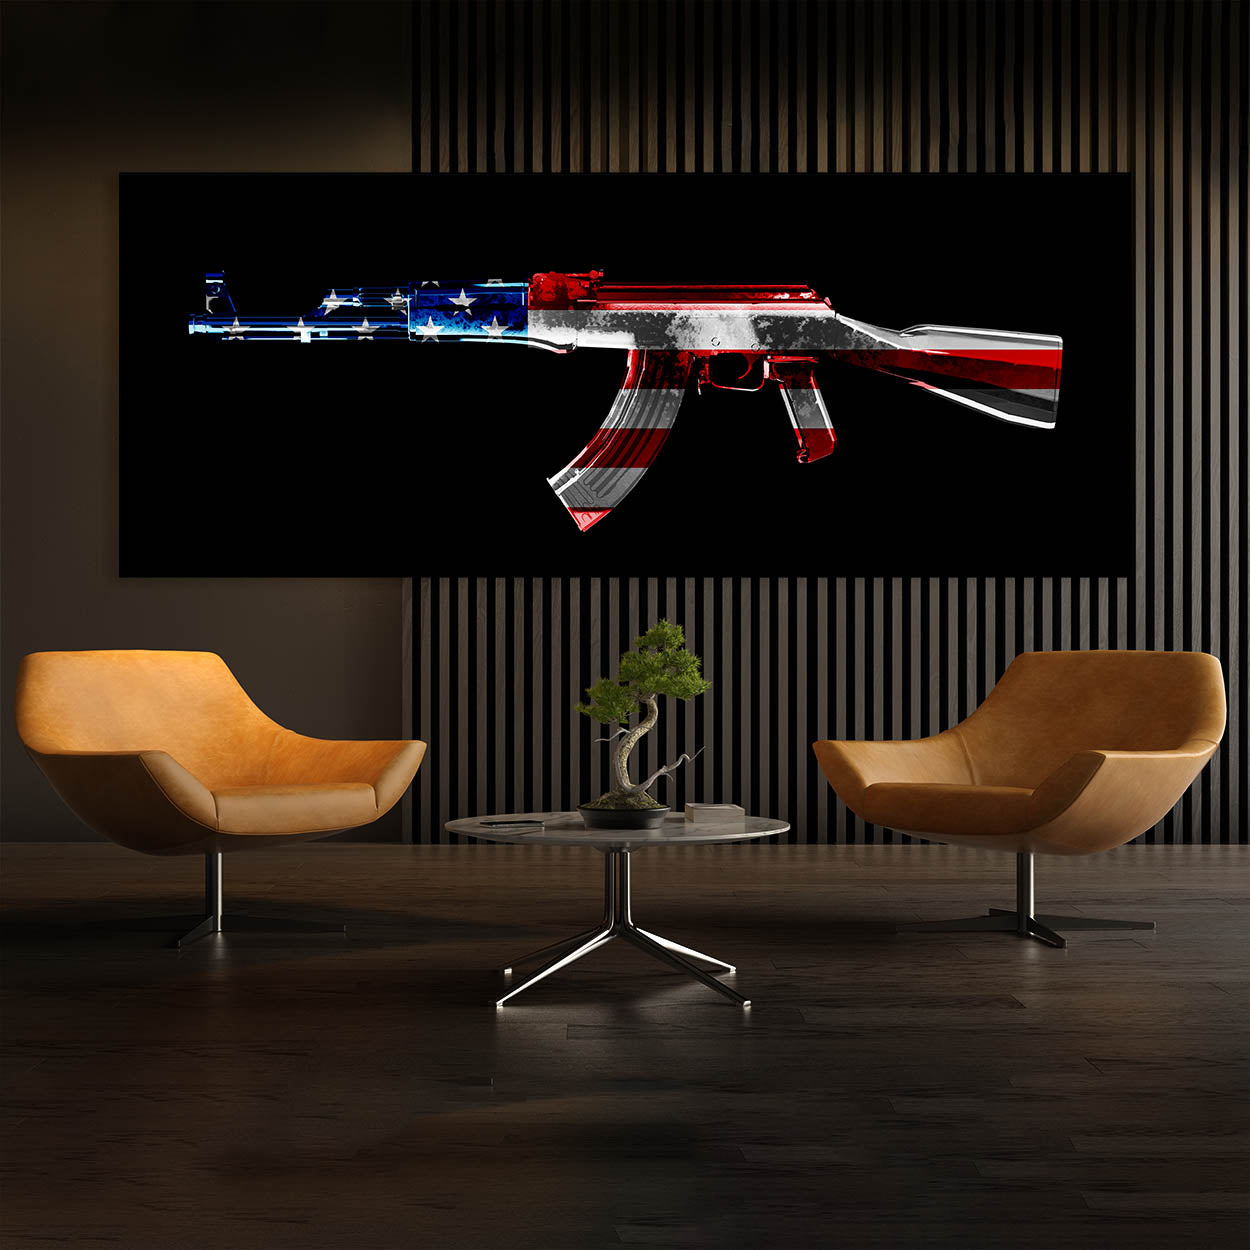 AK-47 pop art- Explore our motivational art collection!